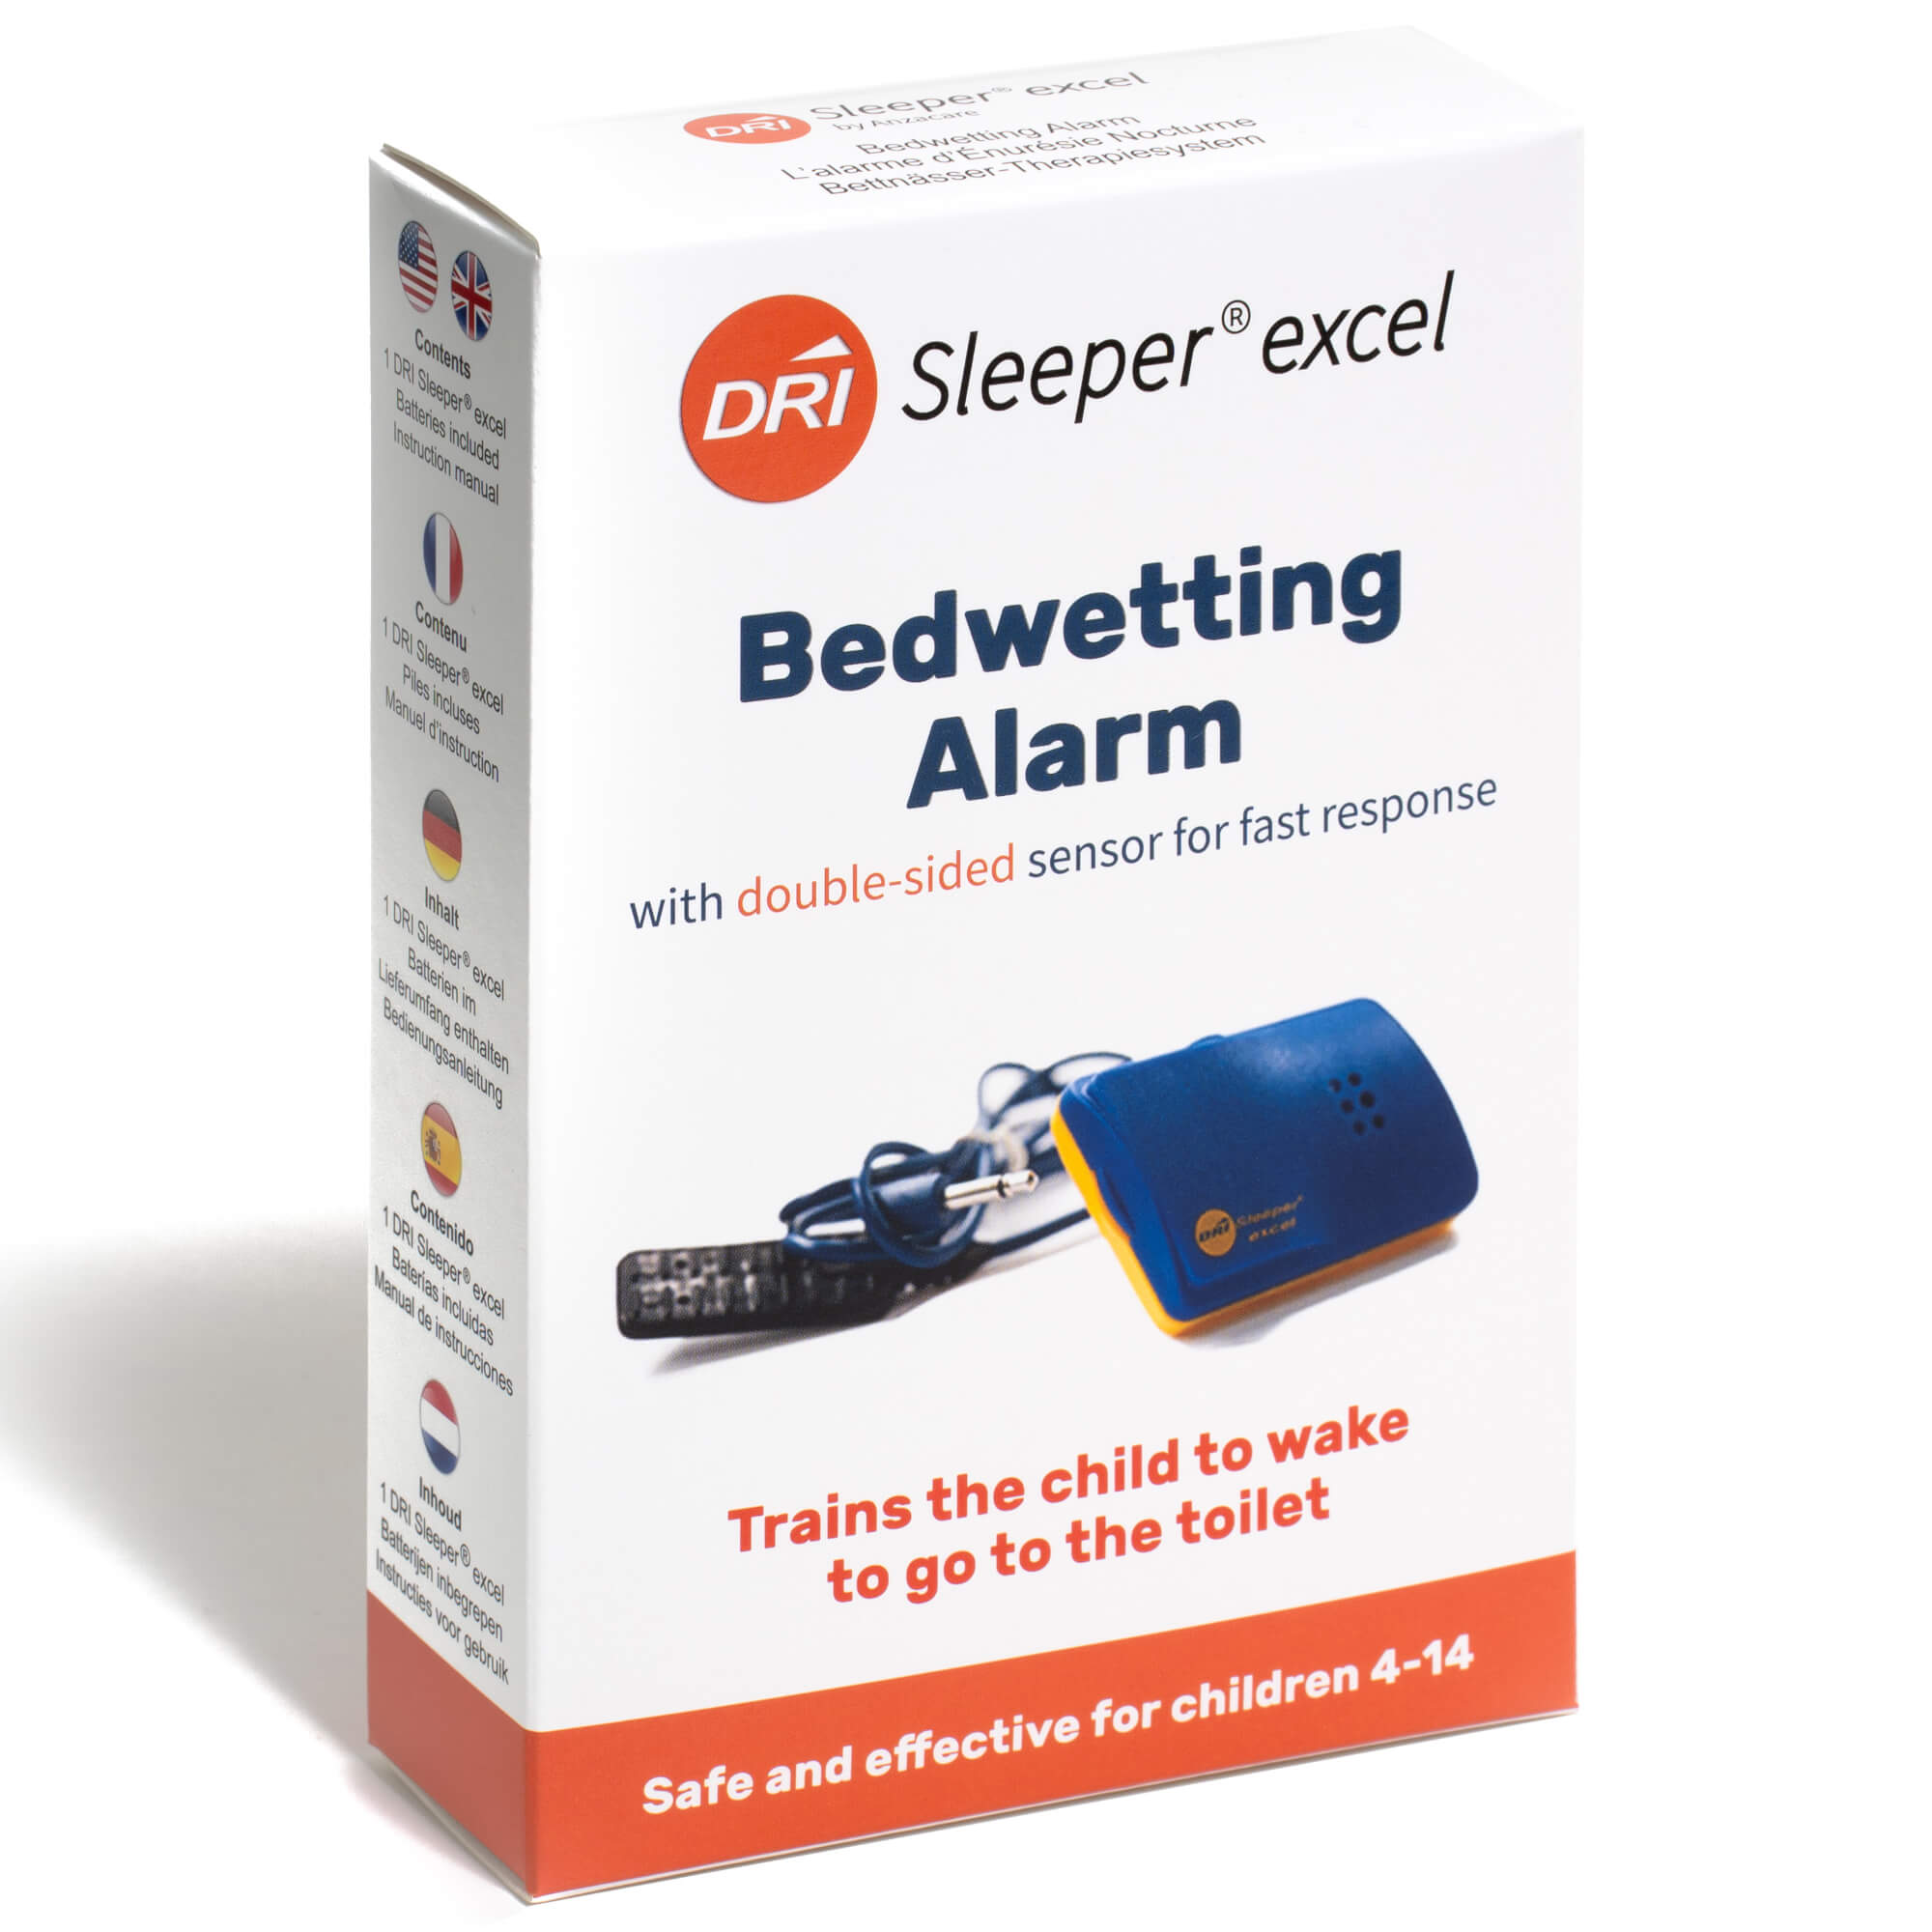 Dri Sleeper Excel stop pipi au lit avec alarme sonore pour l'énurésie